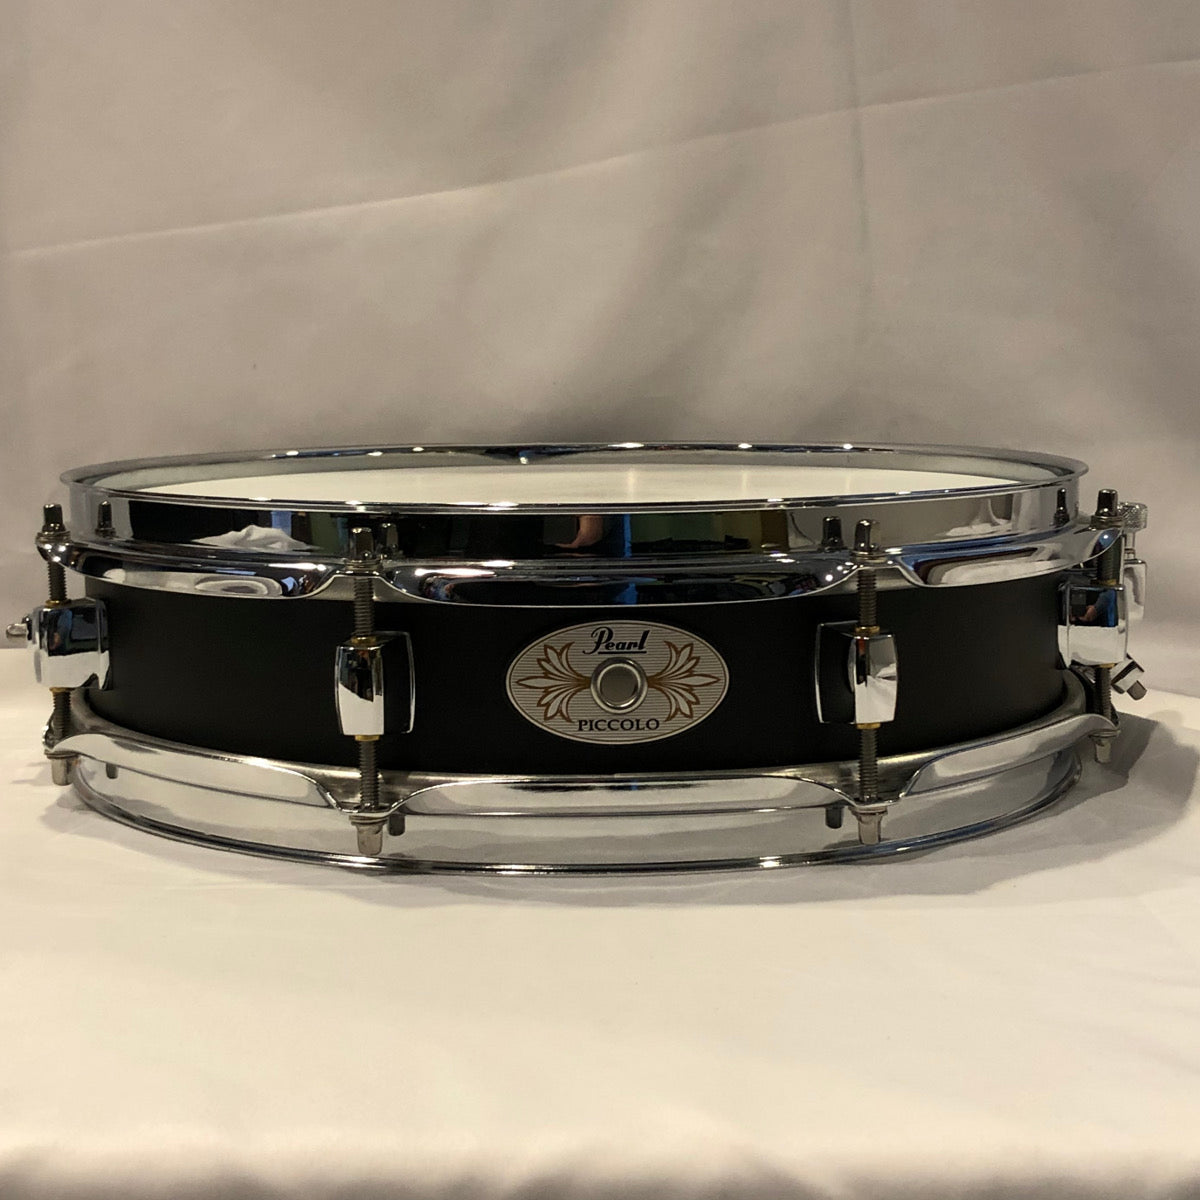 Pearl piccolo refurbishment - Vintage Drum Restoration